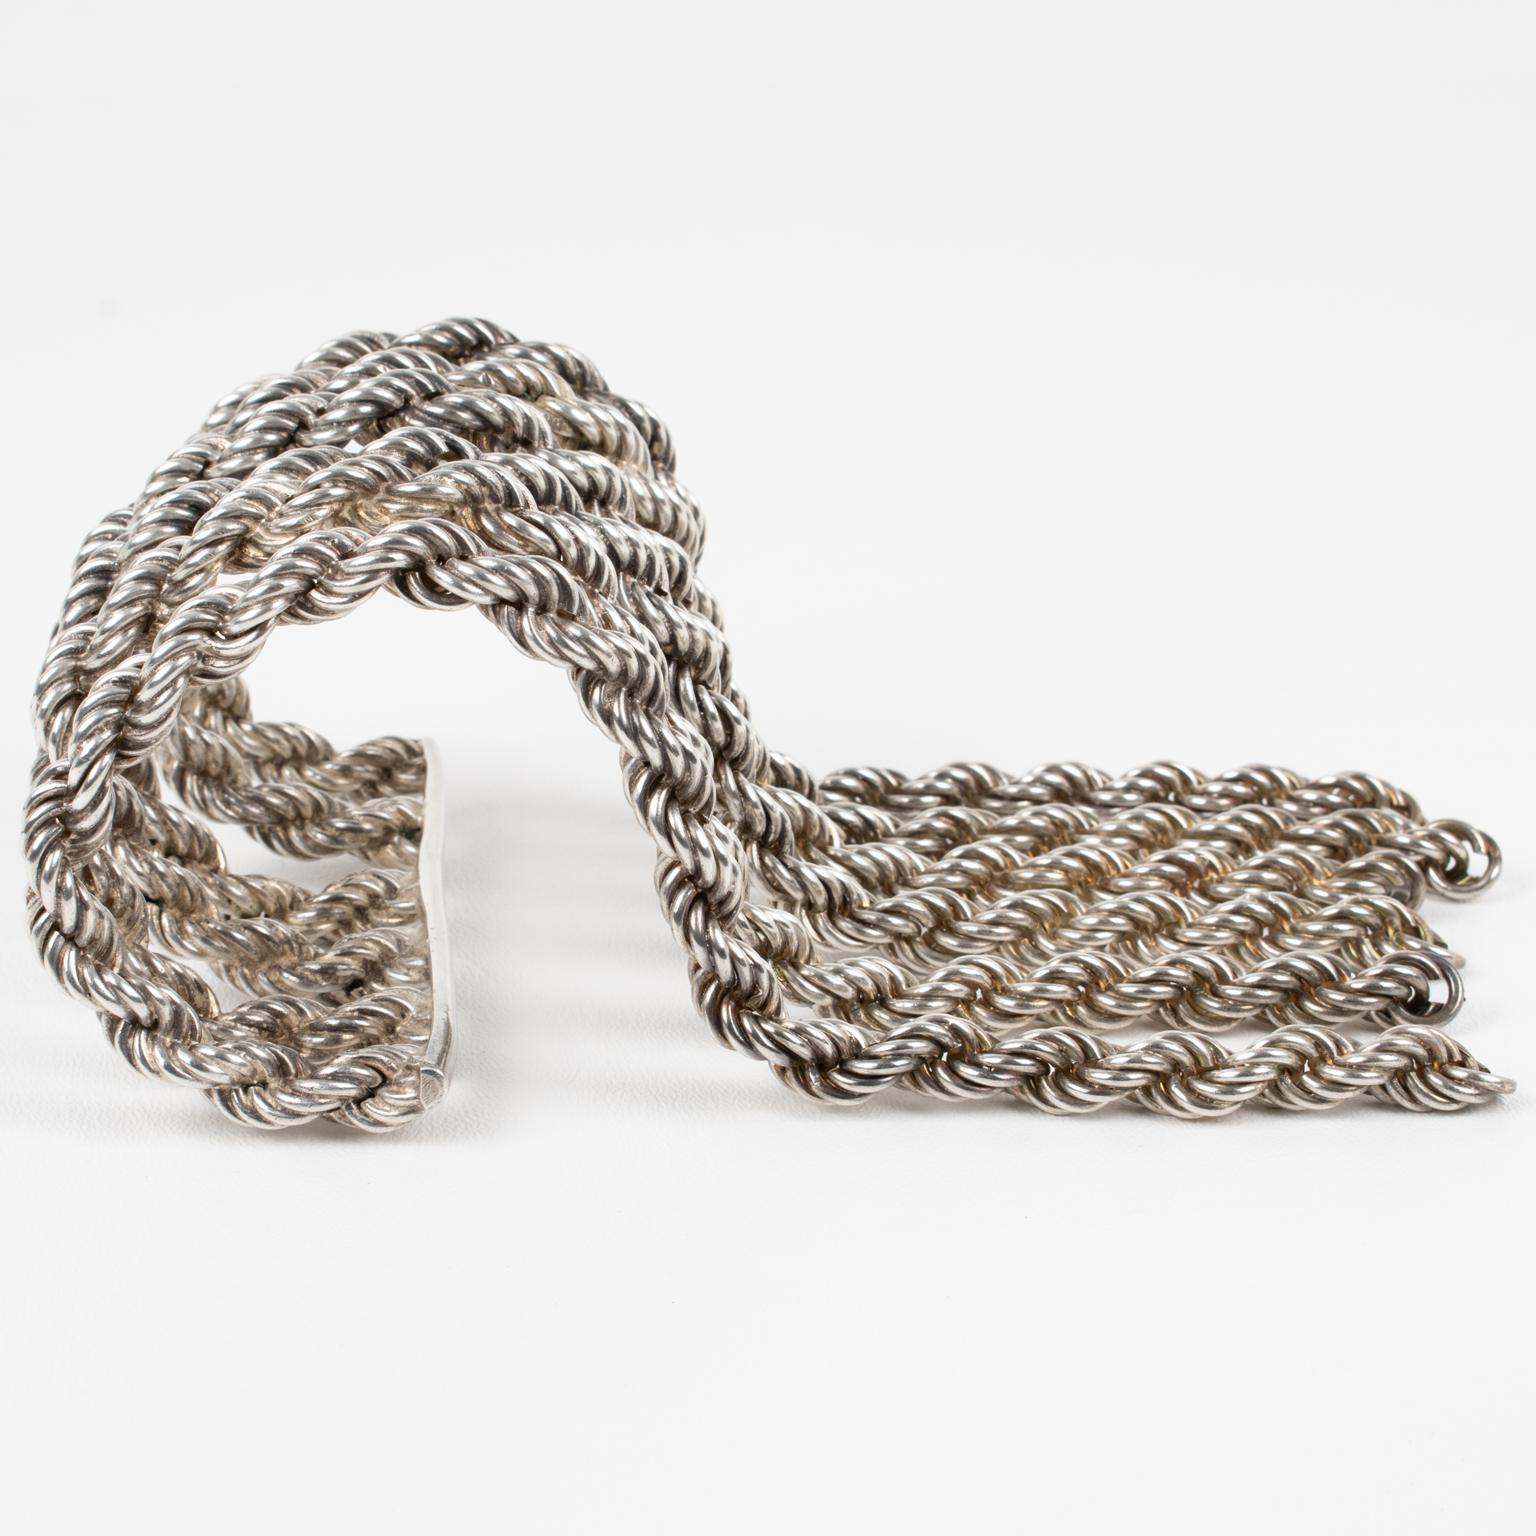 Ce spectaculaire et incroyable bracelet manchette Mercedes Looping Paris est composé d'une manchette en métal argenté avec de lourdes chaînes à boucles et des charmes. 
Les chaînes qui forment ce bracelet sont attachées d'un côté à une barre